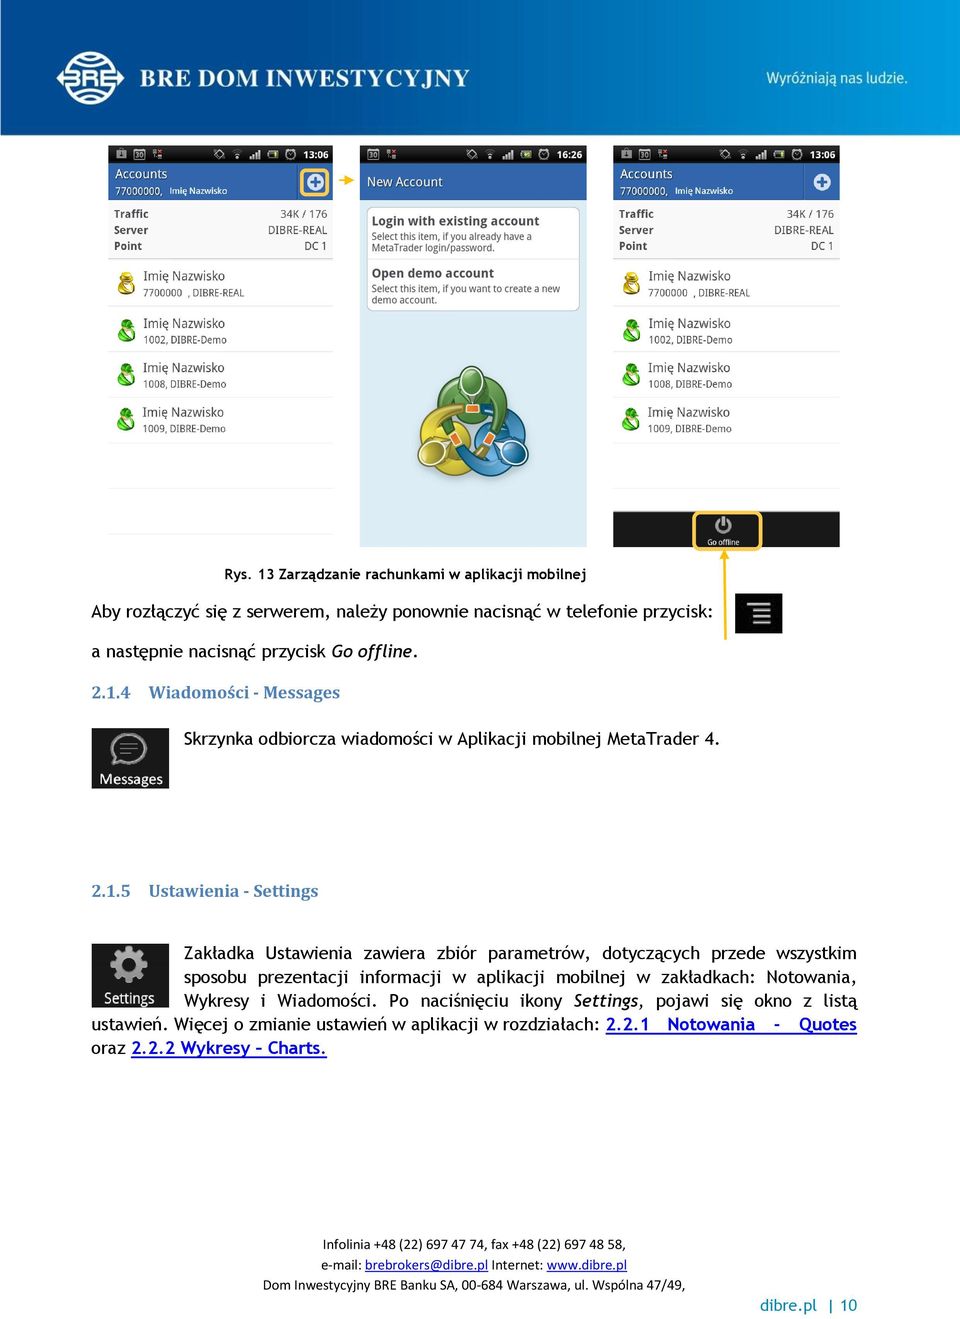 4 Wiadomości - Messages Skrzynka odbiorcza wiadomości w Aplikacji mobilnej MetaTrader 4. 2.1.